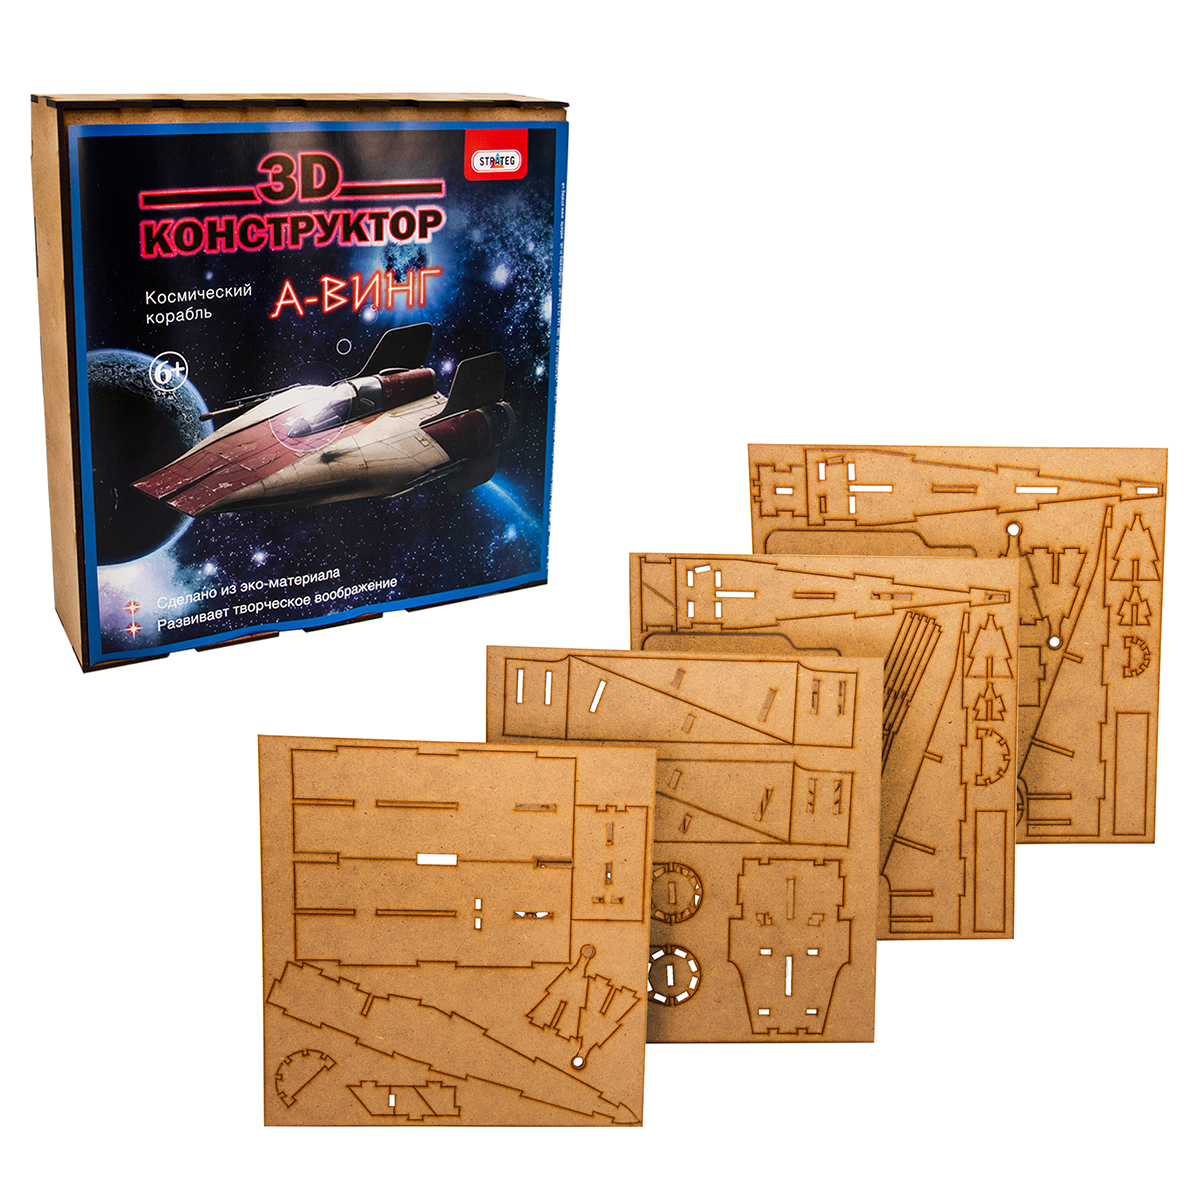 3D дерев'яний Strateg конструктор Космічний корабель - А-ВІНГ (602)